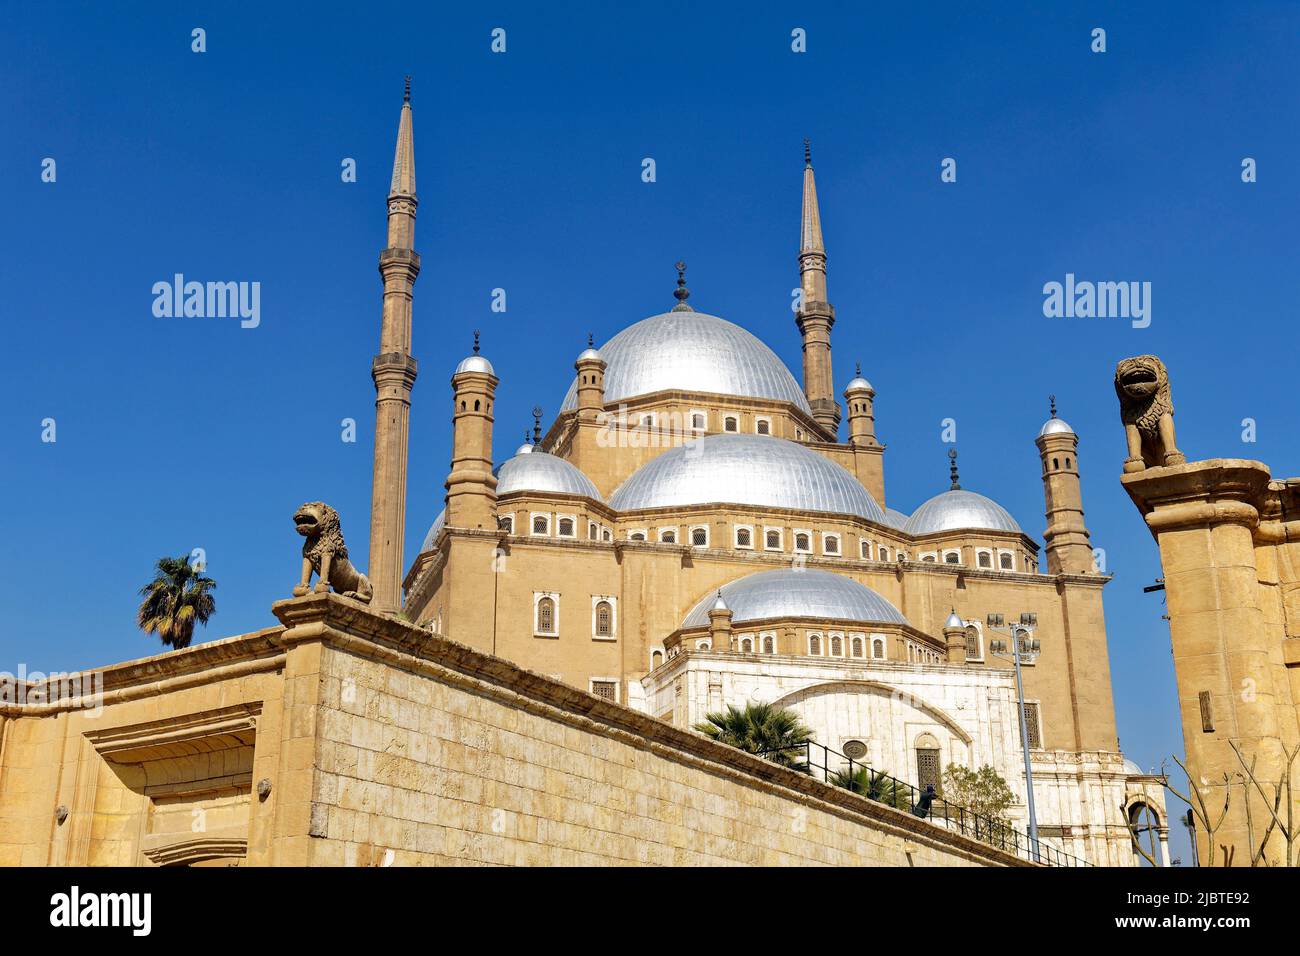 Egypte, le Caire, la vieille ville classée au patrimoine mondial de l'UNESCO, la Citadelle avec la Mosquée Mohammed Ali Banque D'Images